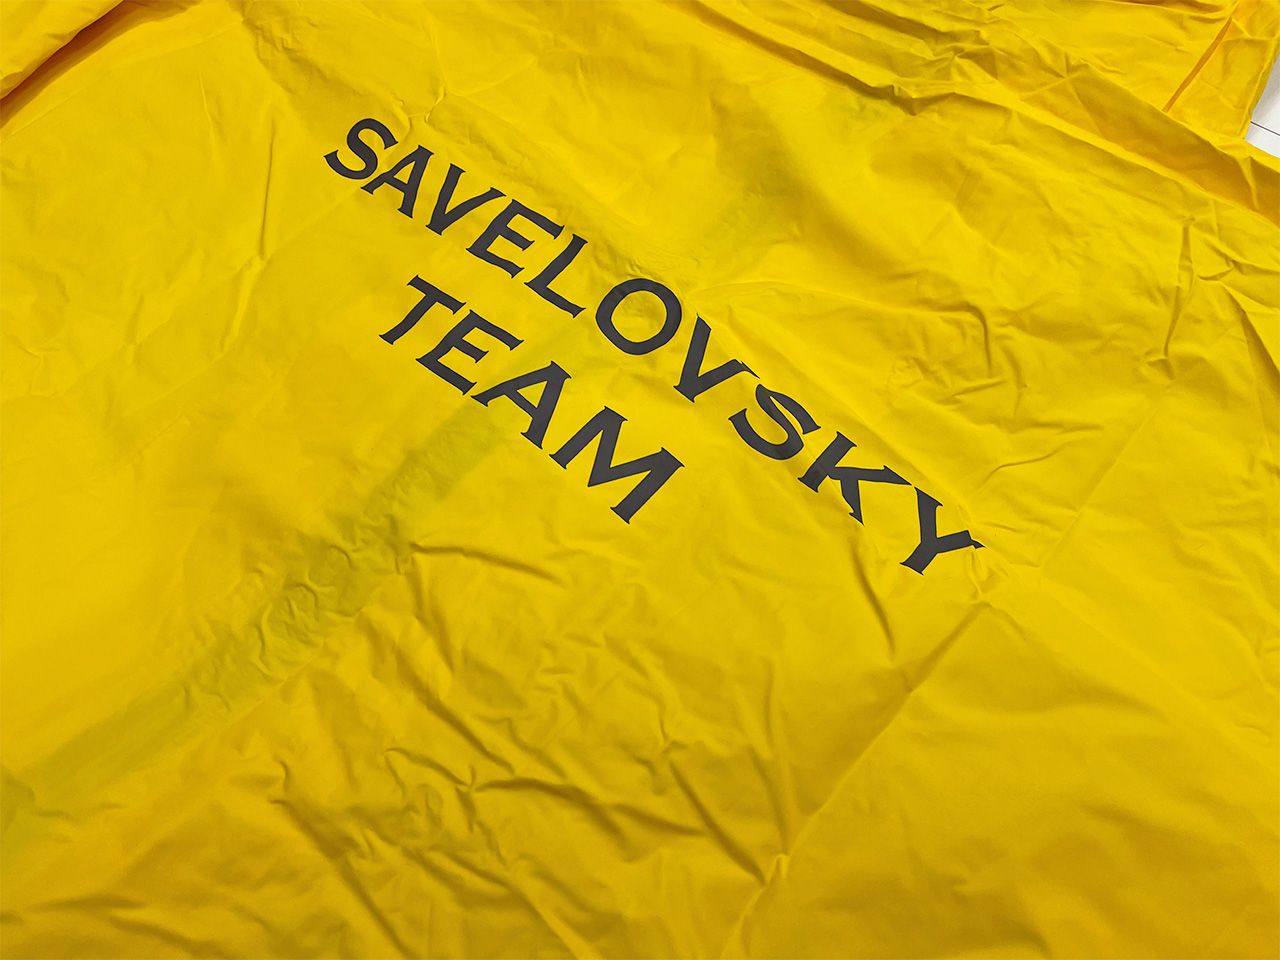 Savelovsky Team